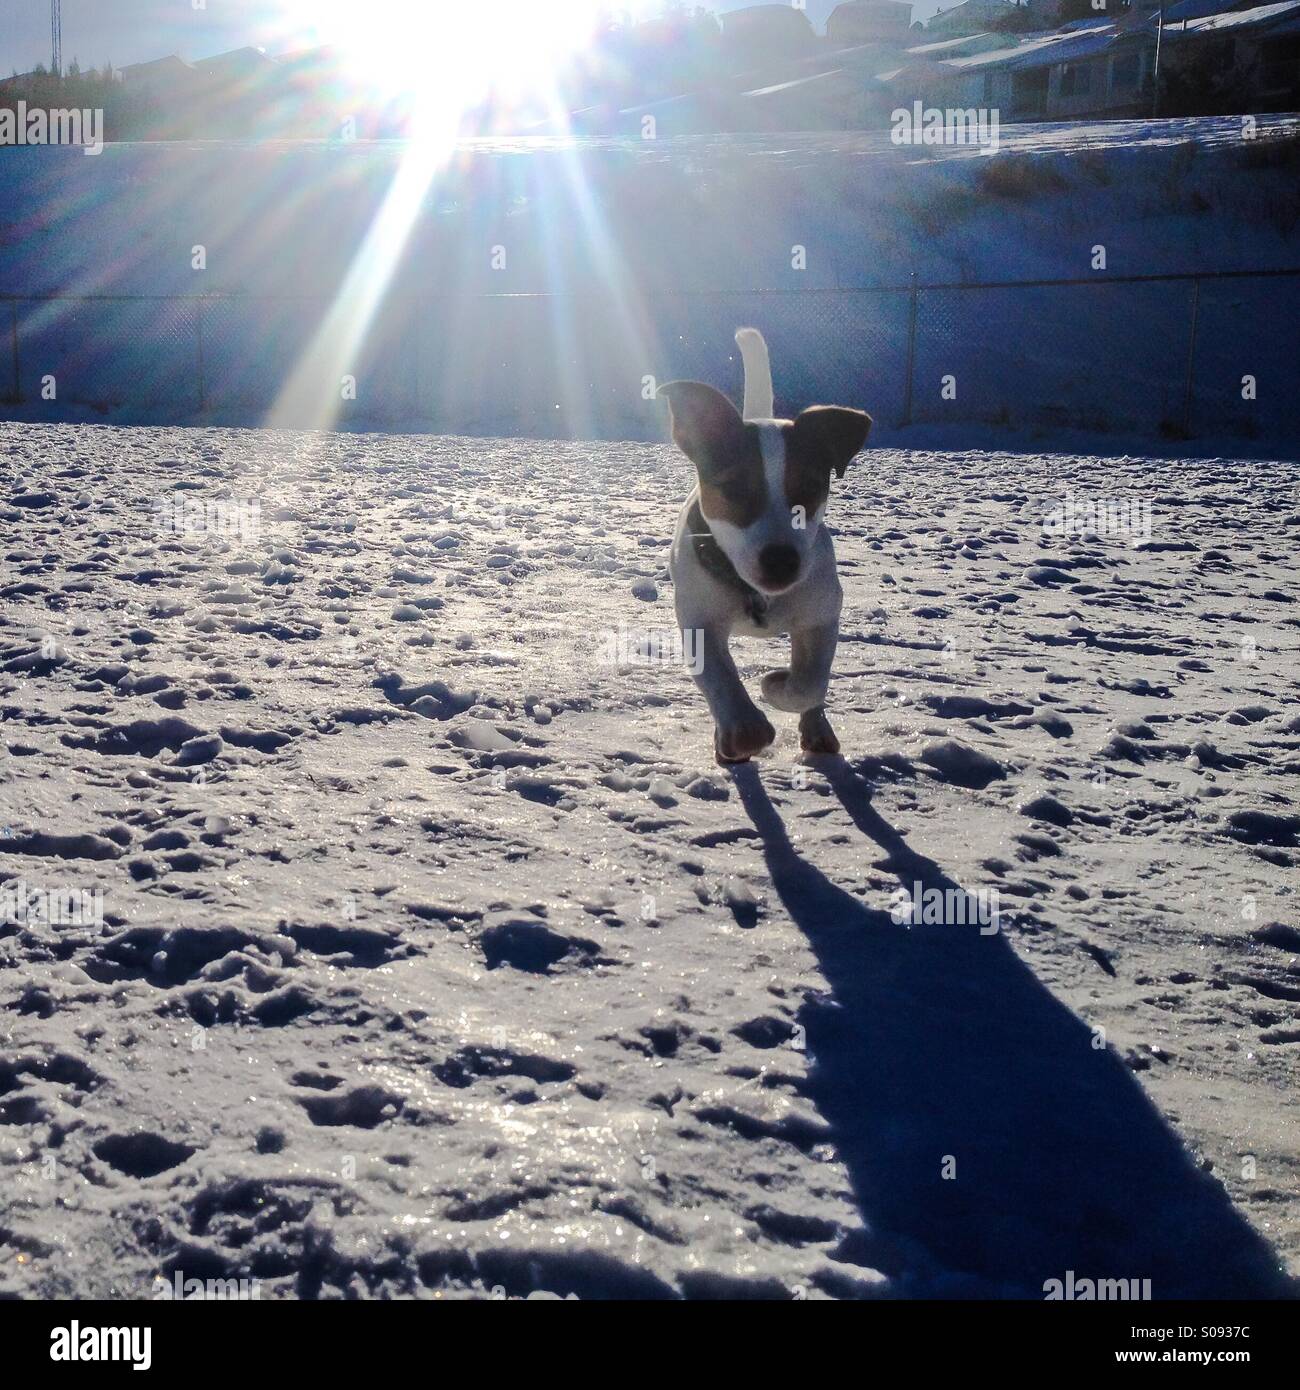 Cinque-mese-vecchio Jack Russell Terrier cucciolo acceso verso la telecamera su un soleggiato freddo giorno d'inverno. La massa nevosa è congelato e brilla al sole. Foto Stock